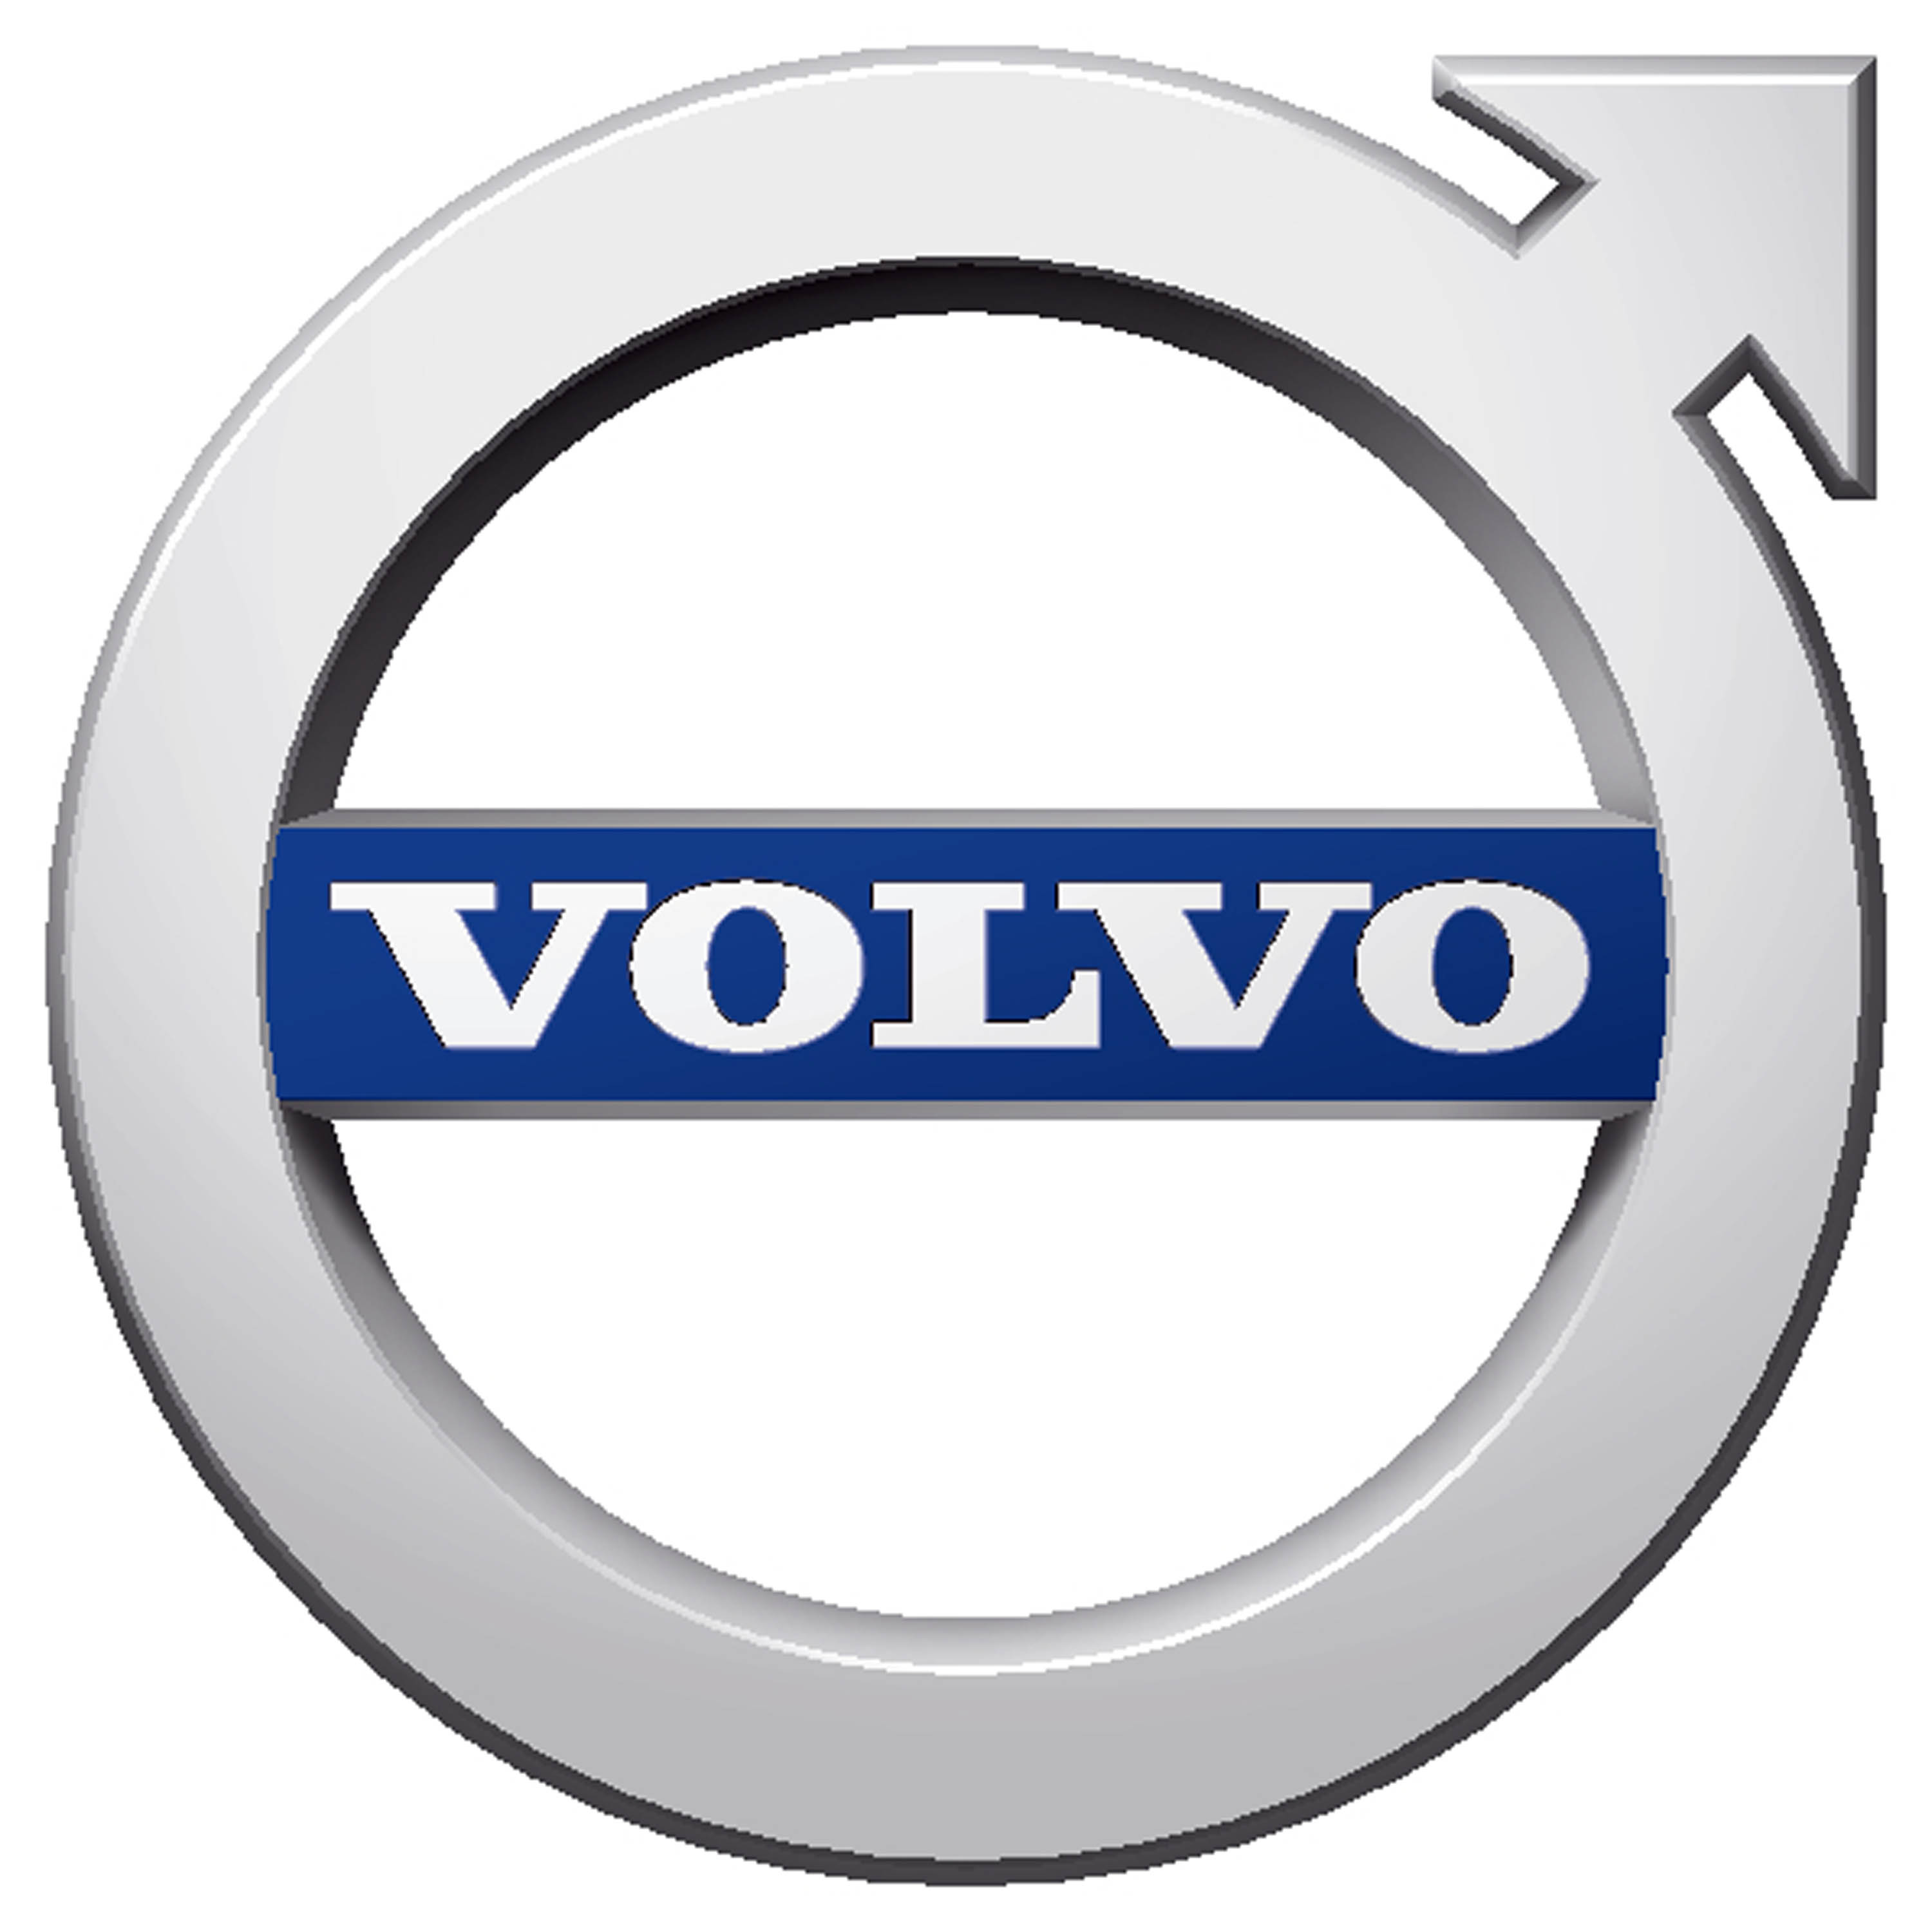 Volvo มอบข้อเสนอสุดเดือด รุ่น XC40 และ XC60 รับสิทธิประโยชน์สูงสุดห้าแสนบาท!